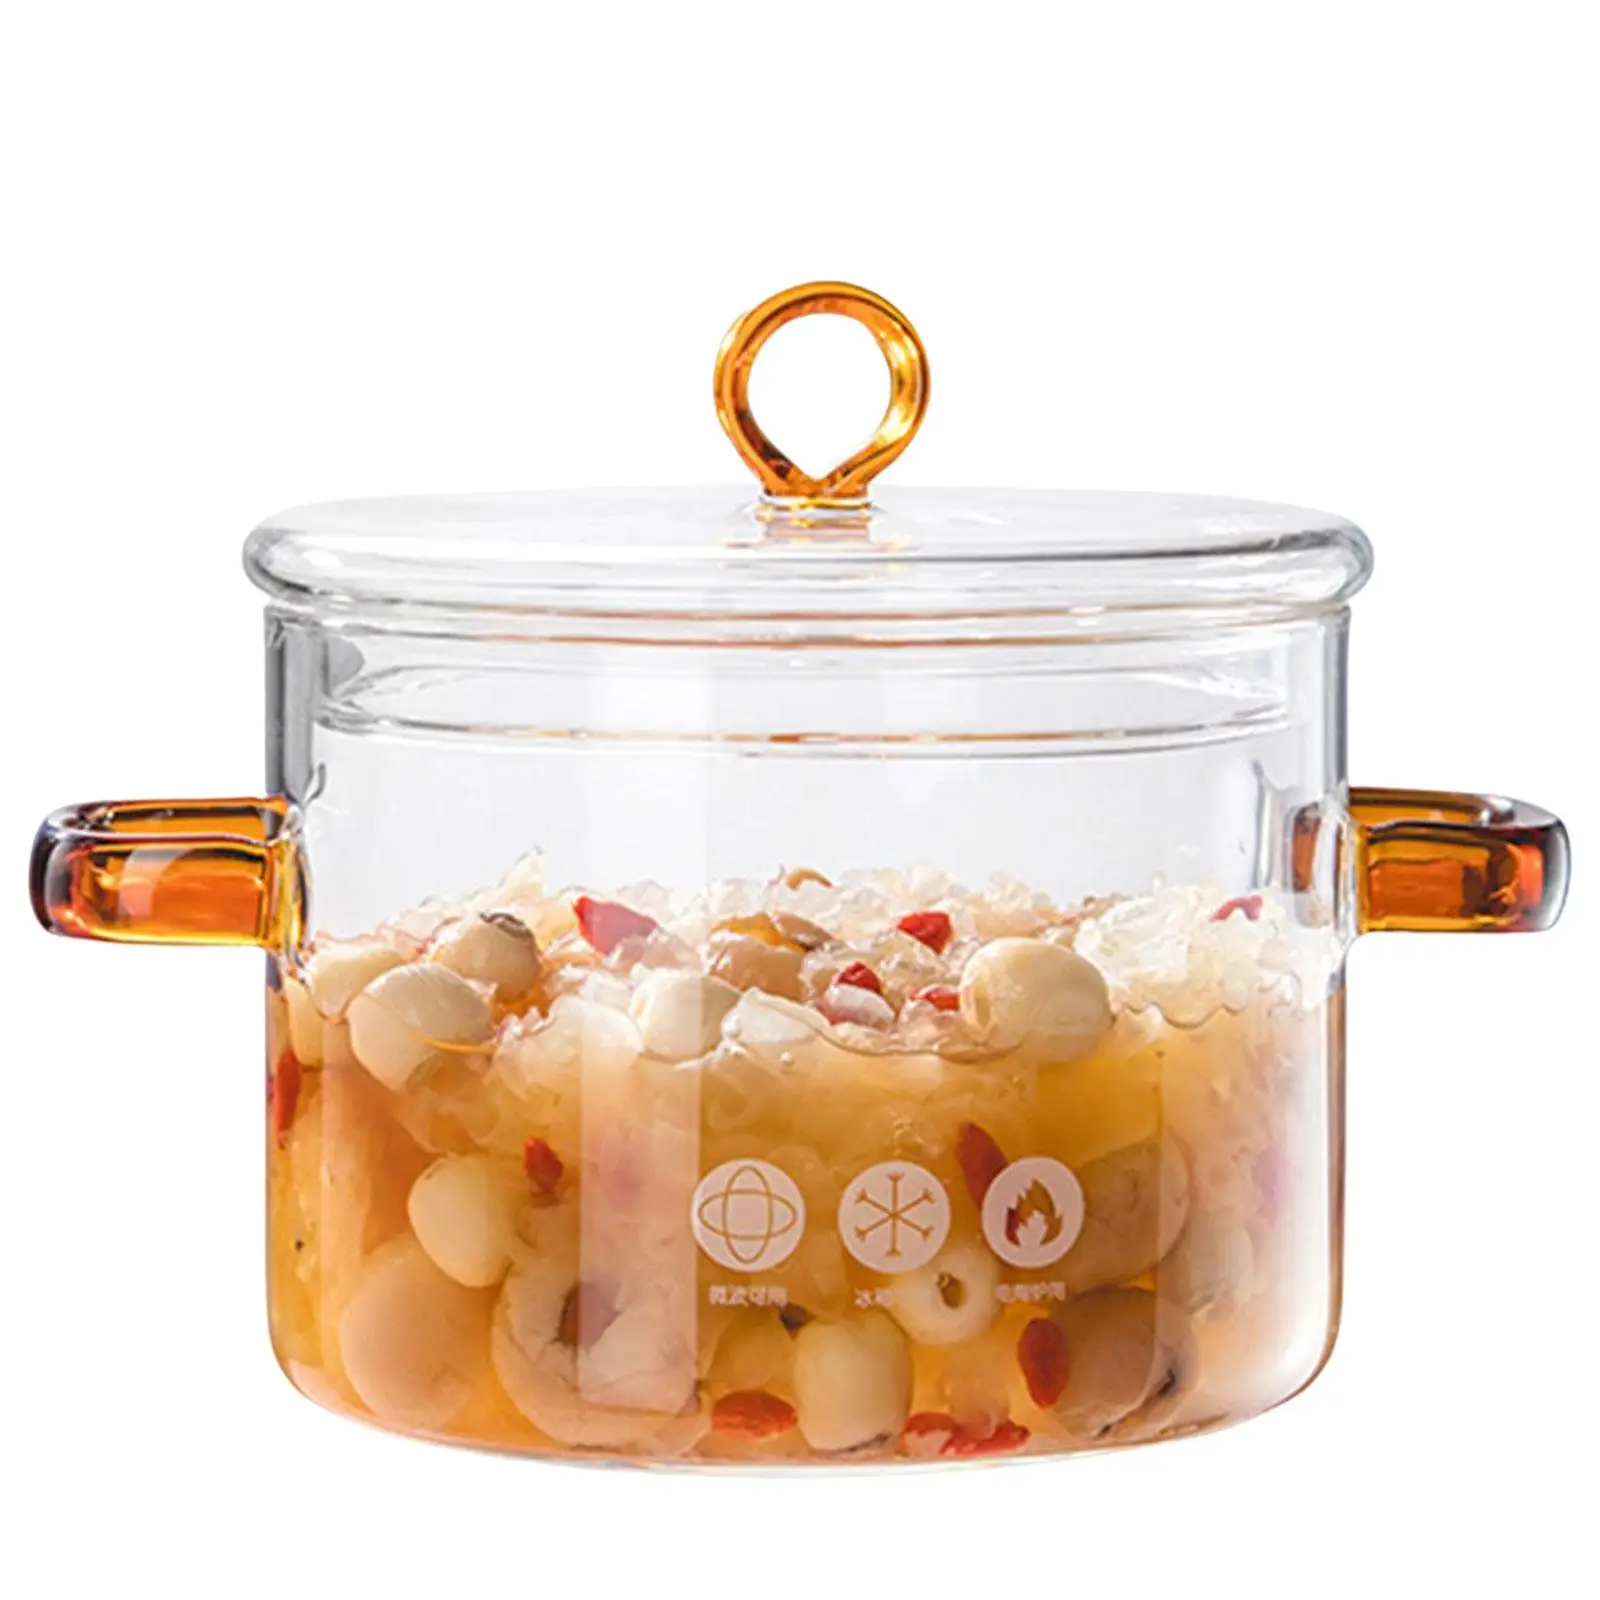 Clear Glass Soup Porridge Pot with Cover, Heat Resistant Soup Pot, Stockpots for Noodles, Milk